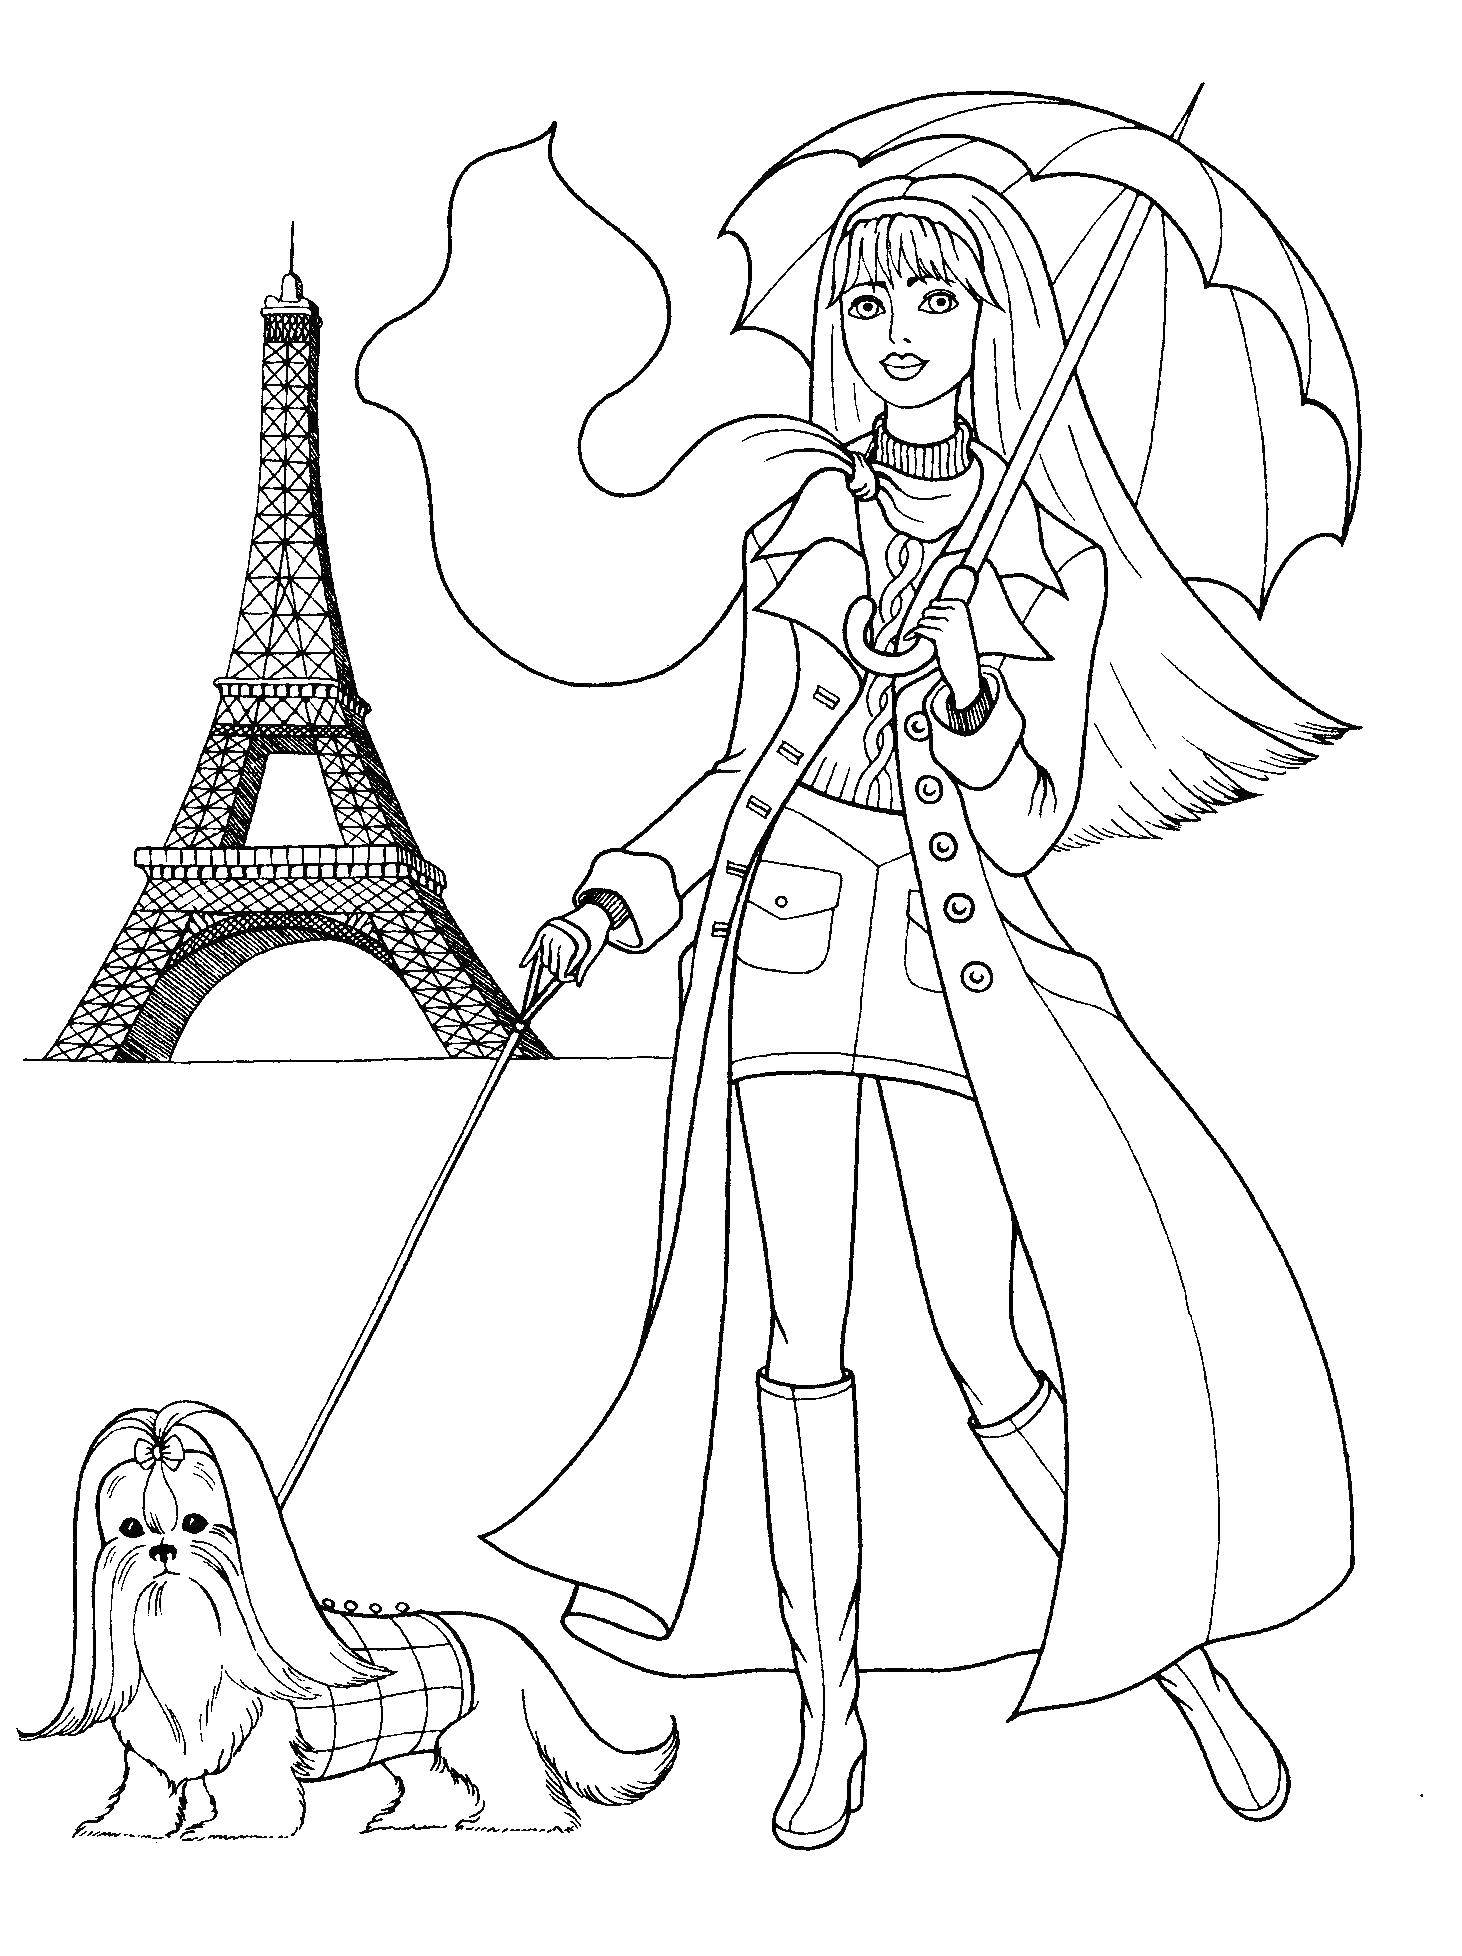 Раскраски с барби по серии мультфильмов  для девочек  Барби в париже